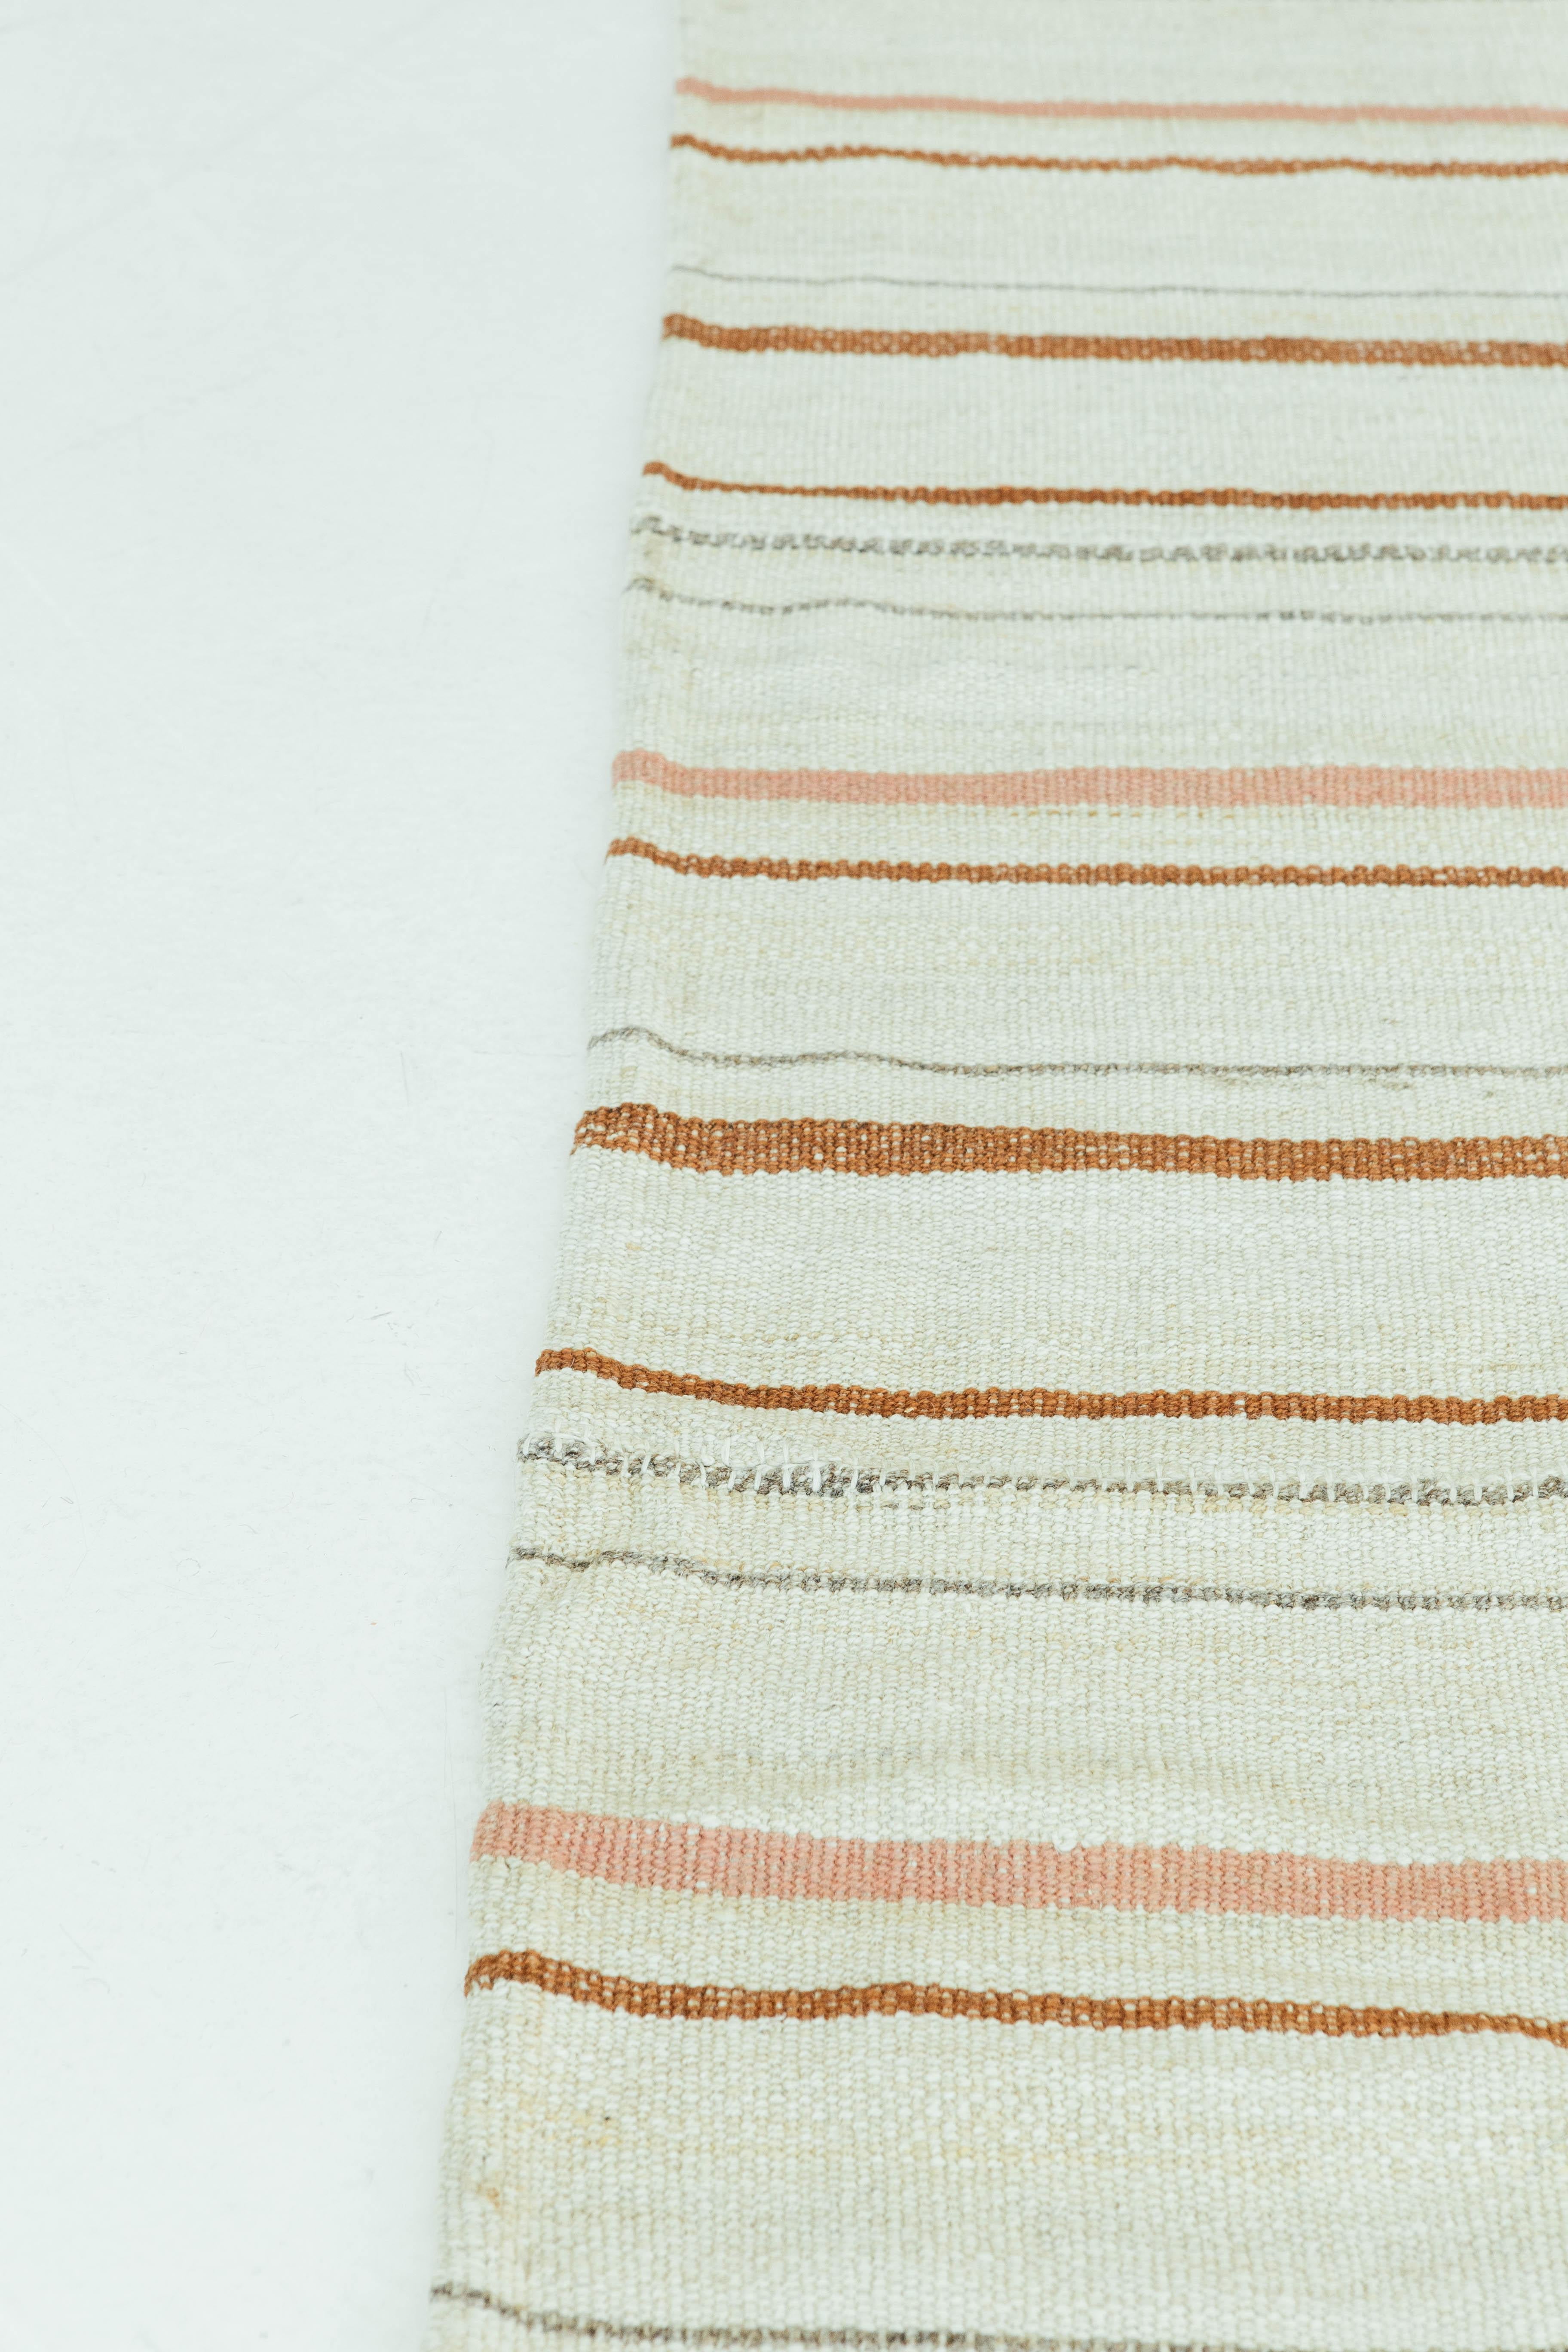 Dieser persische Jejim-Kilim ist ein gebändertes Flachgewebe mit abwechselnden neutralen Farben in Elfenbein, Taupe und Rost. Persische Flachgewebe bestehen aus der besten Wolle und werden auf außergewöhnliche Weise gewebt, um interessante